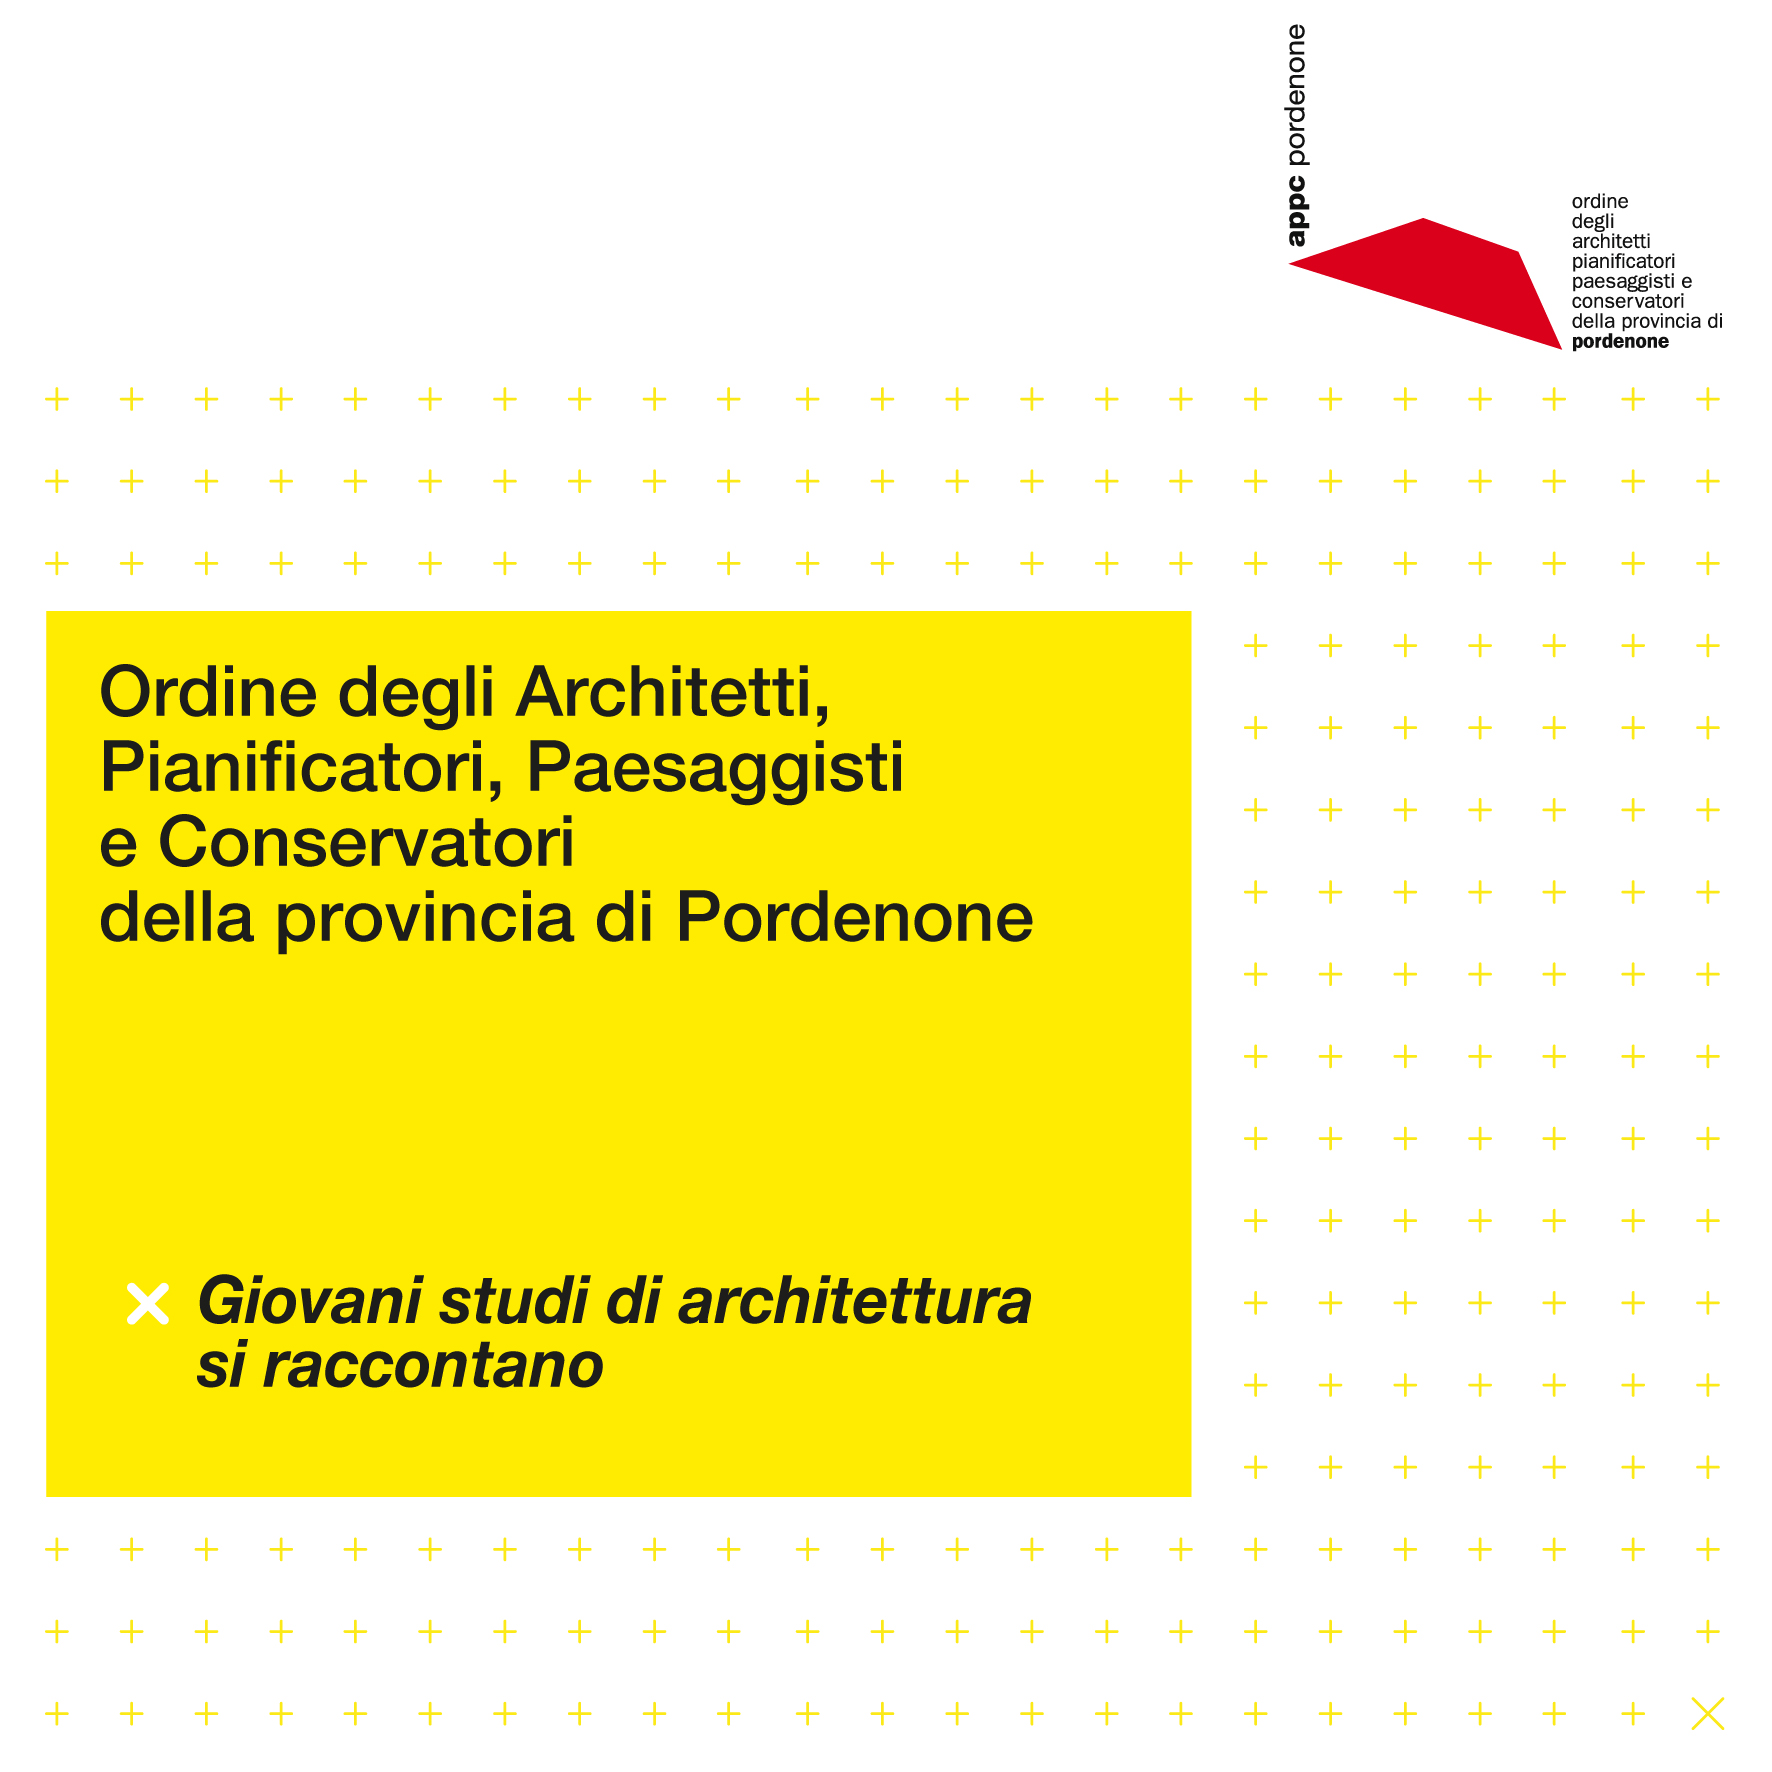 Copertina dell'evento dell'Ordine degli Architetti di Pordenone